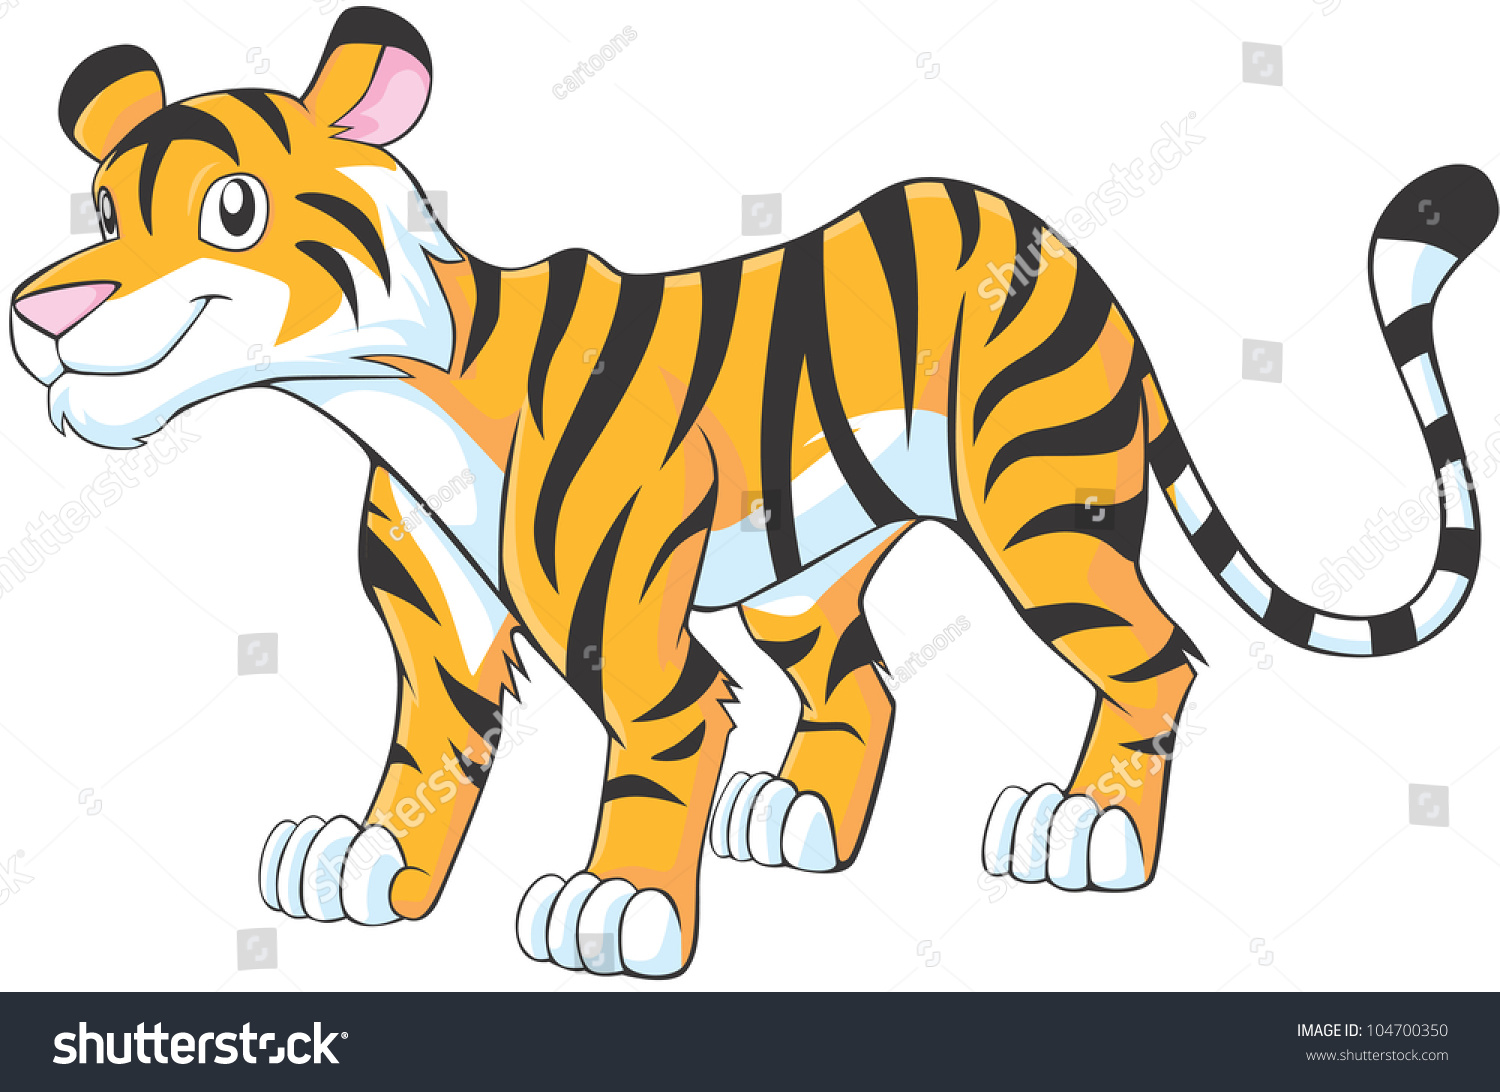 Happy Tiger Cartoon Stock Vector Illustration 104700350 : Shutterstock